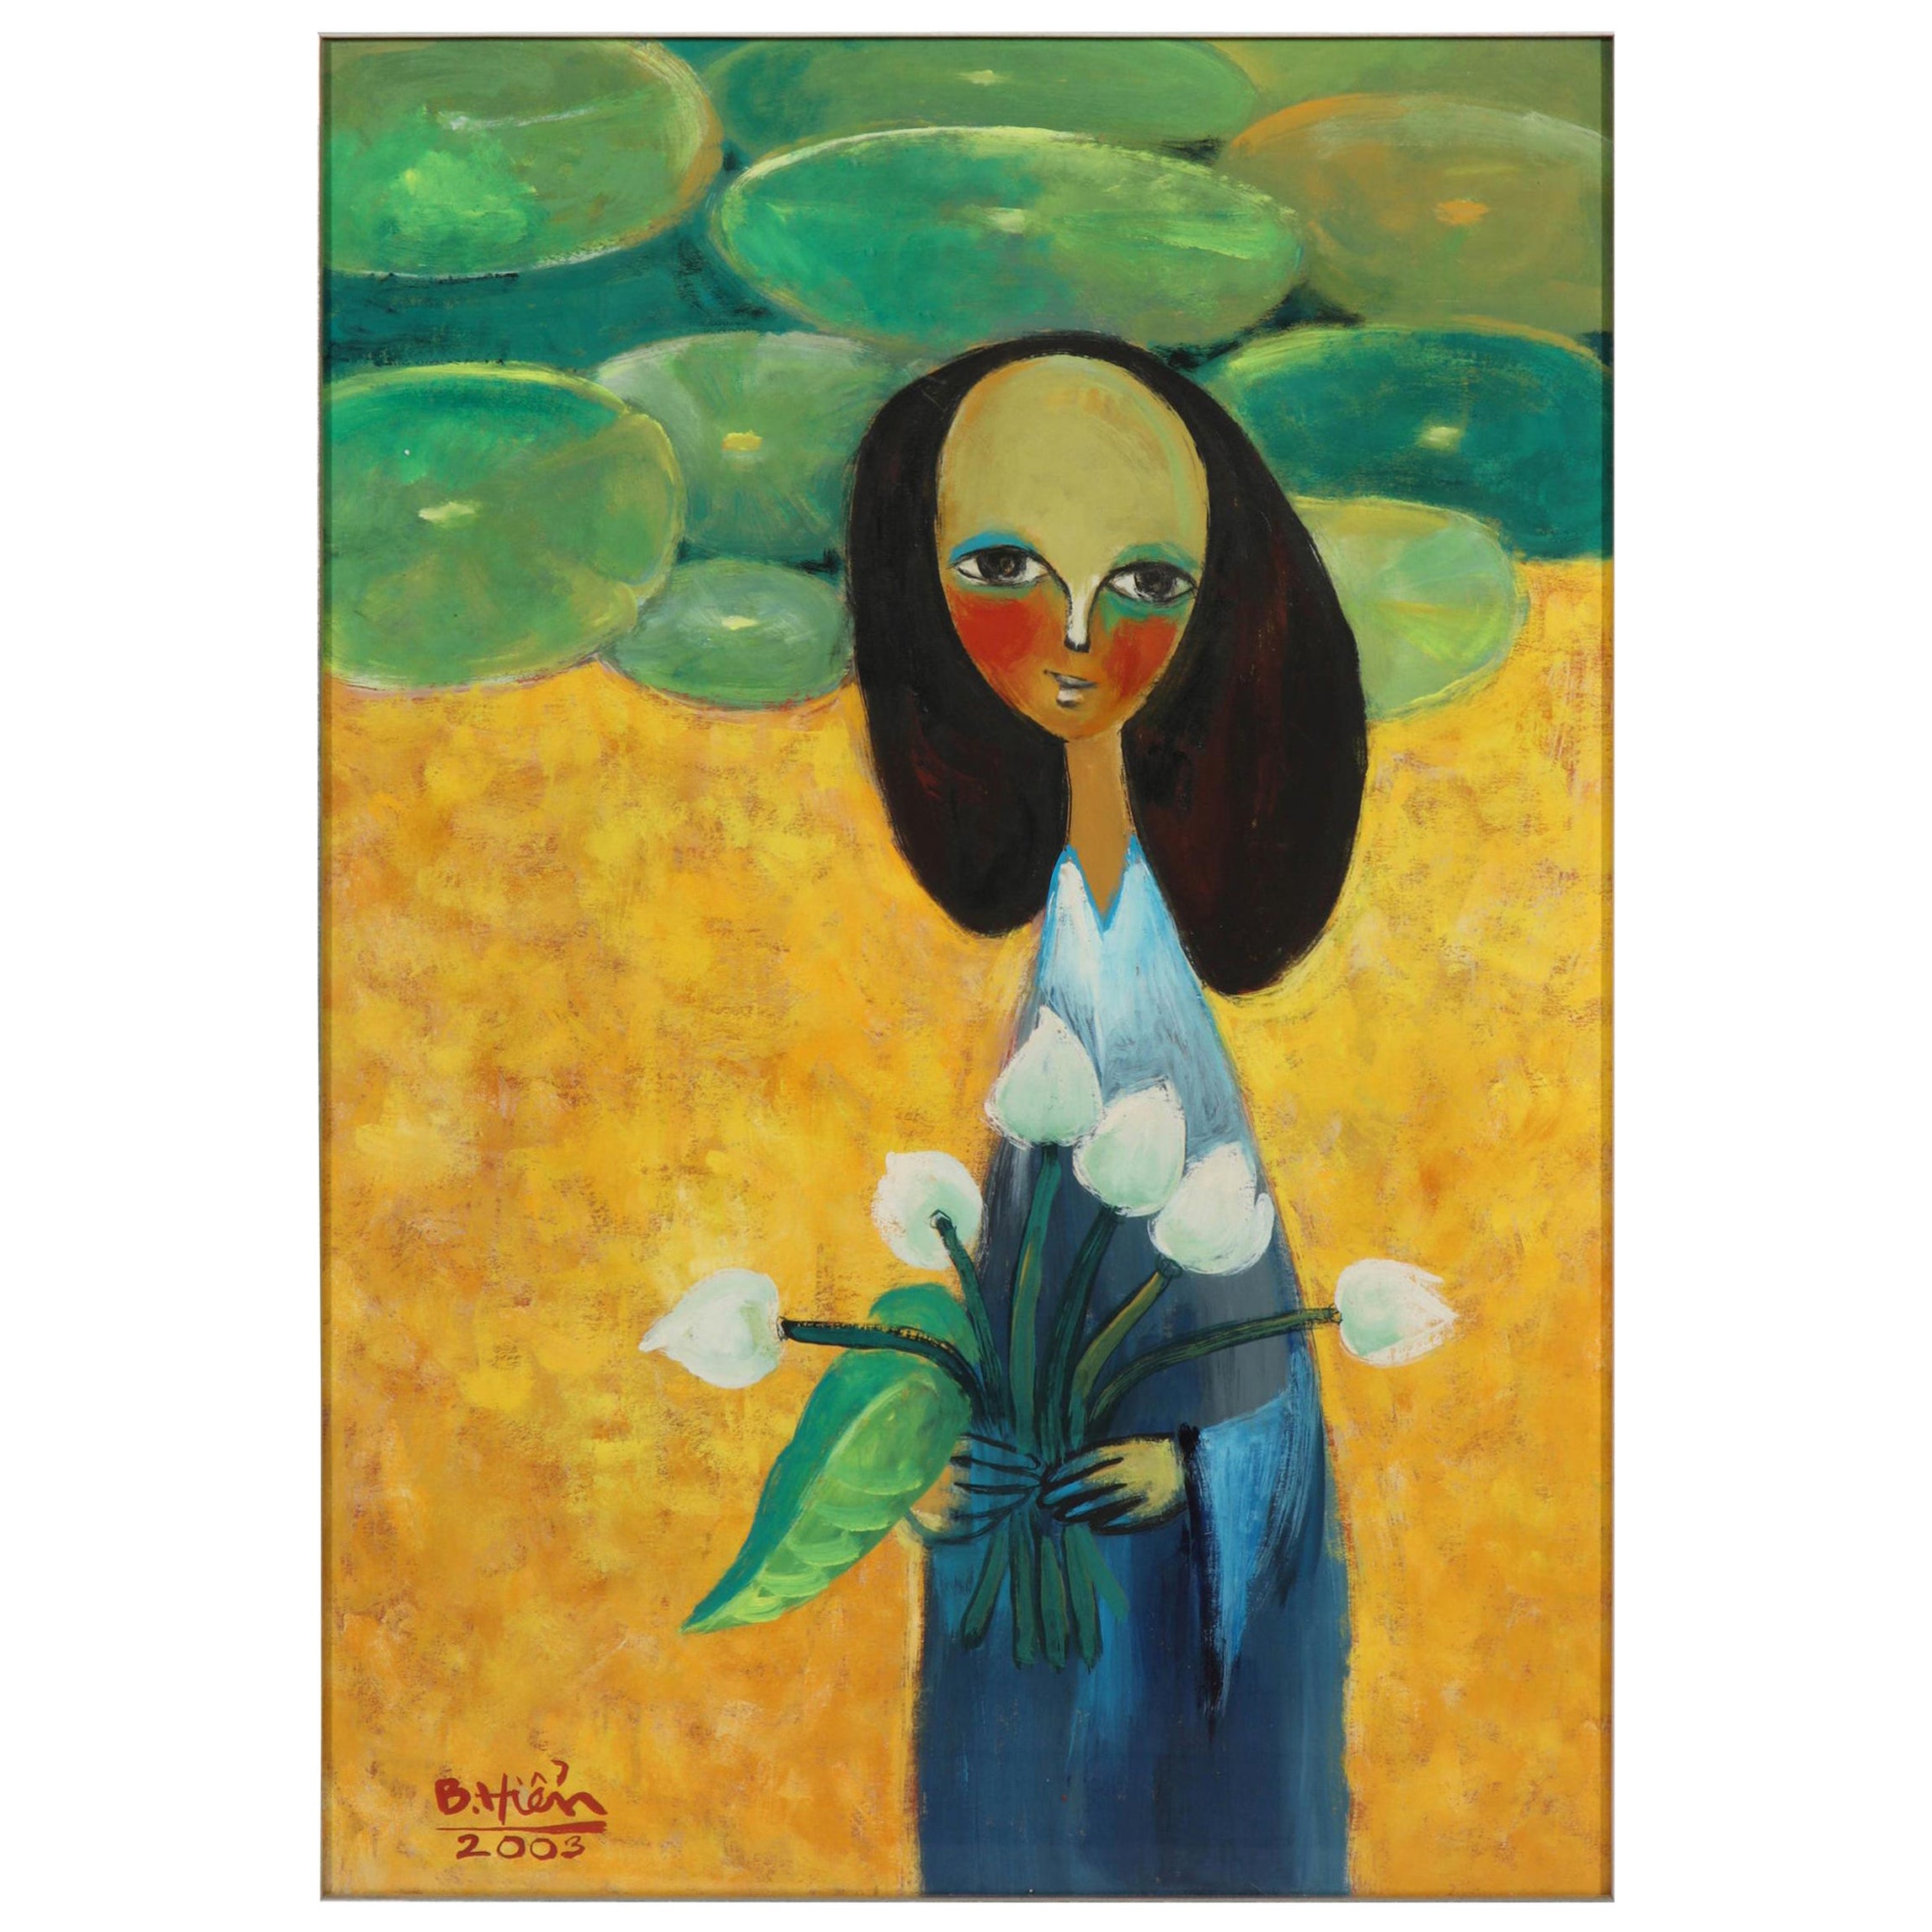 Gemälde einer Dame mit Blumen, grün, gelb und blau, auf Papier, Hanoi Künstler